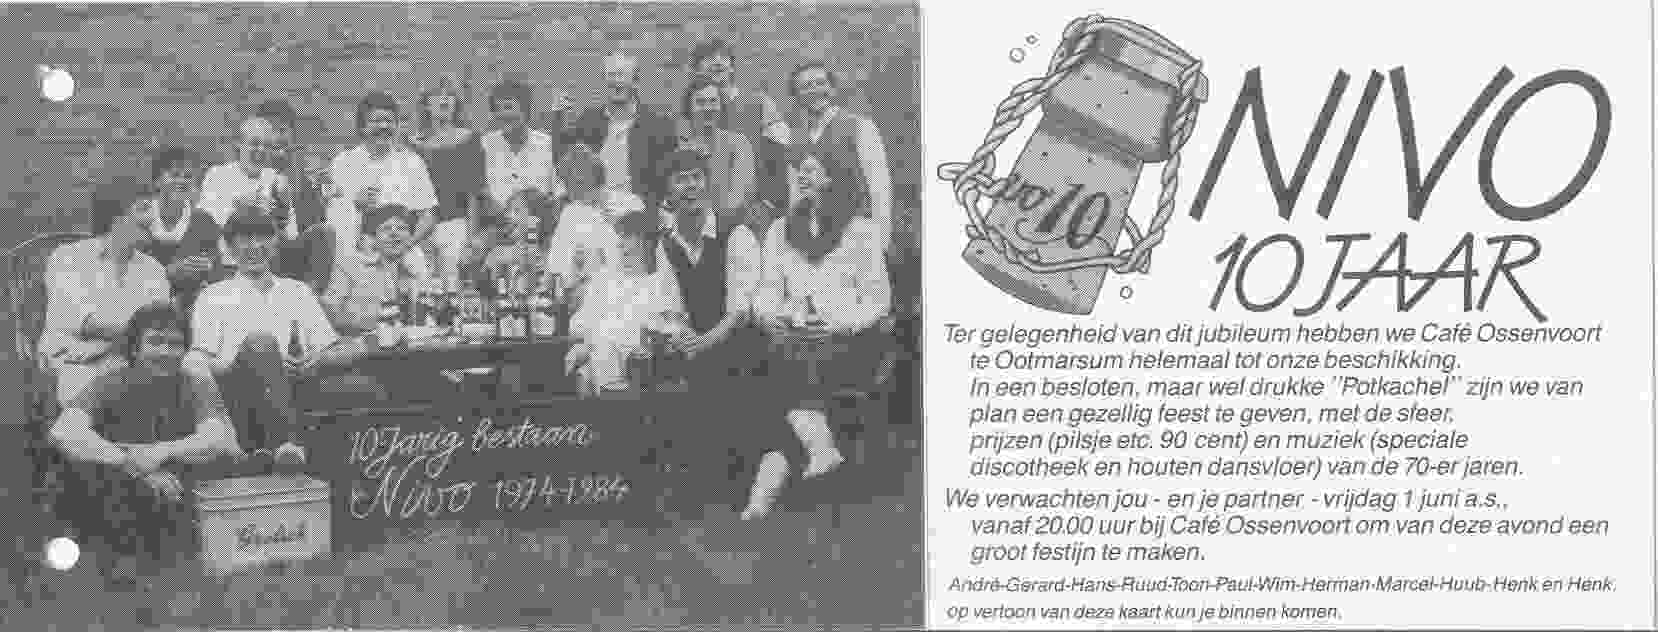 Uitnodiging feestavond van NIVO op 1984-06-01